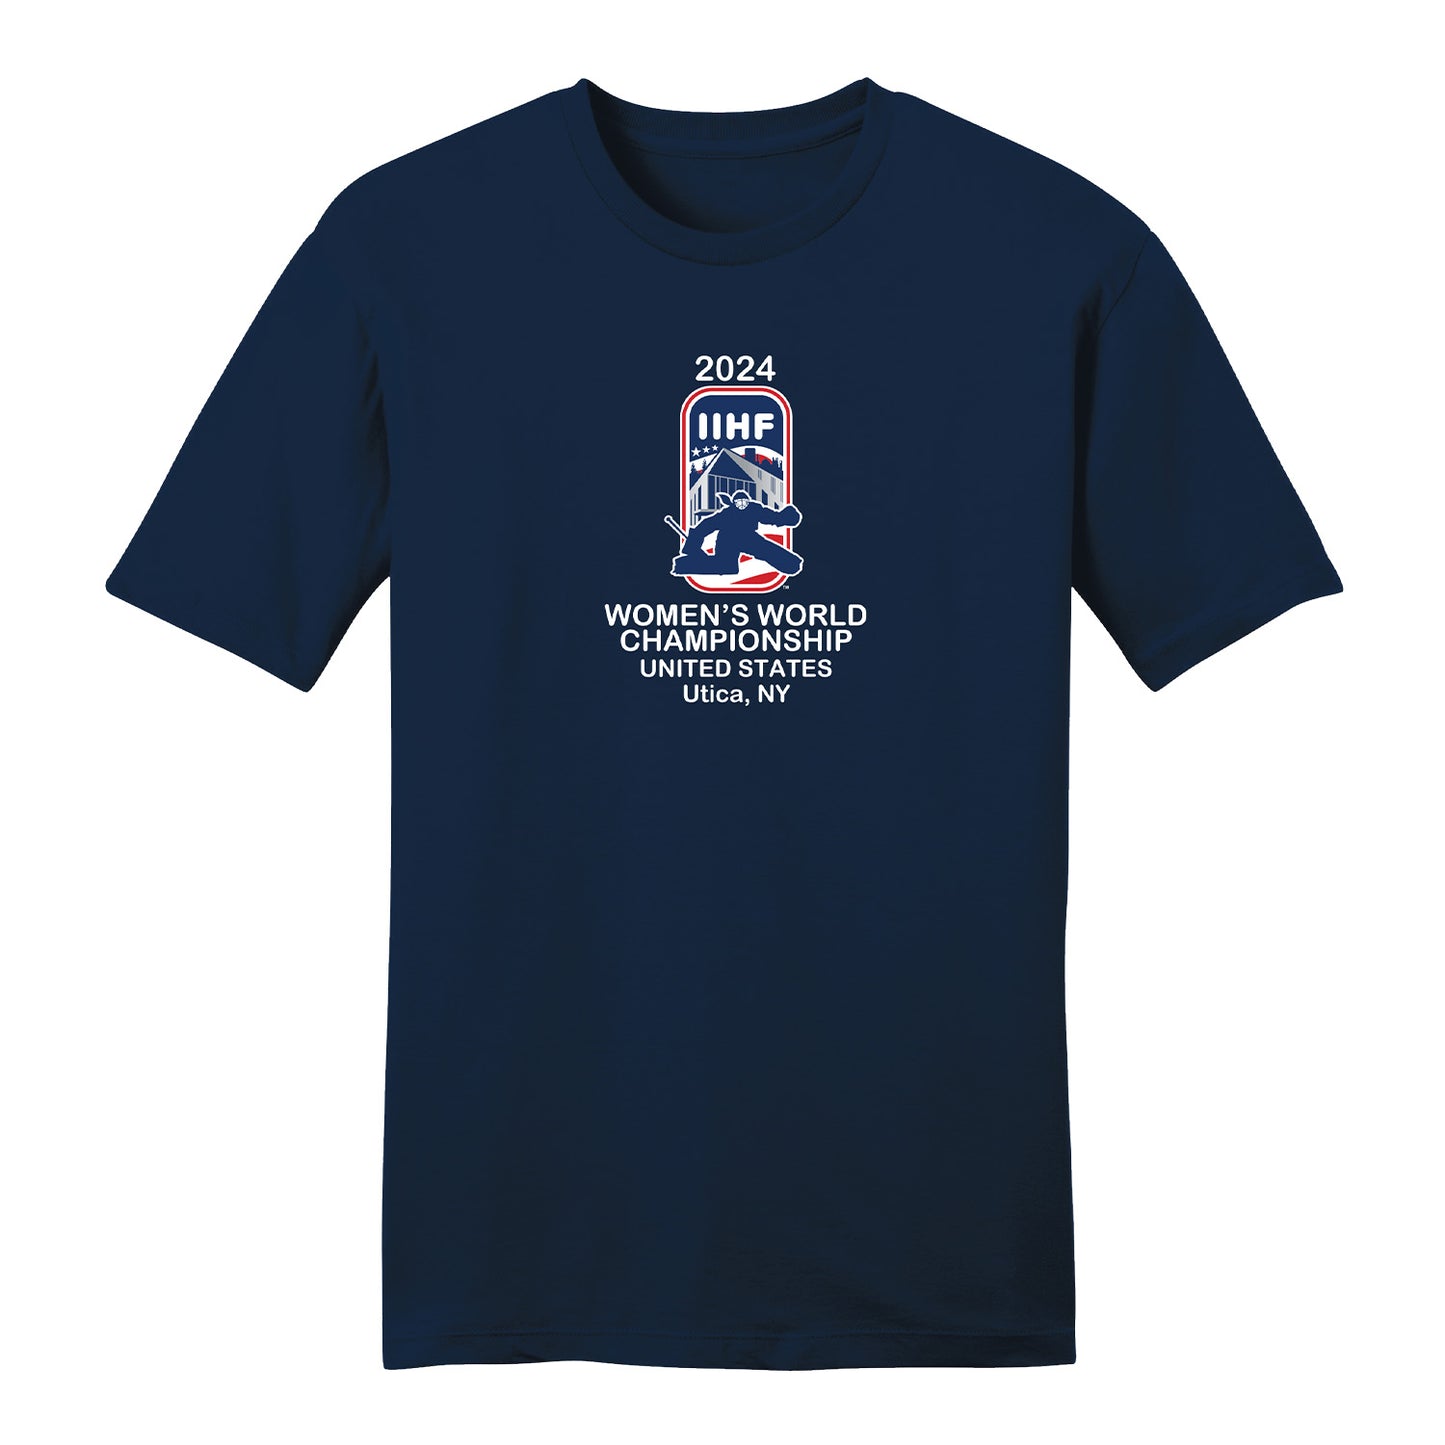 2024 IIHF Women's World Championship T-Shirt - Navy